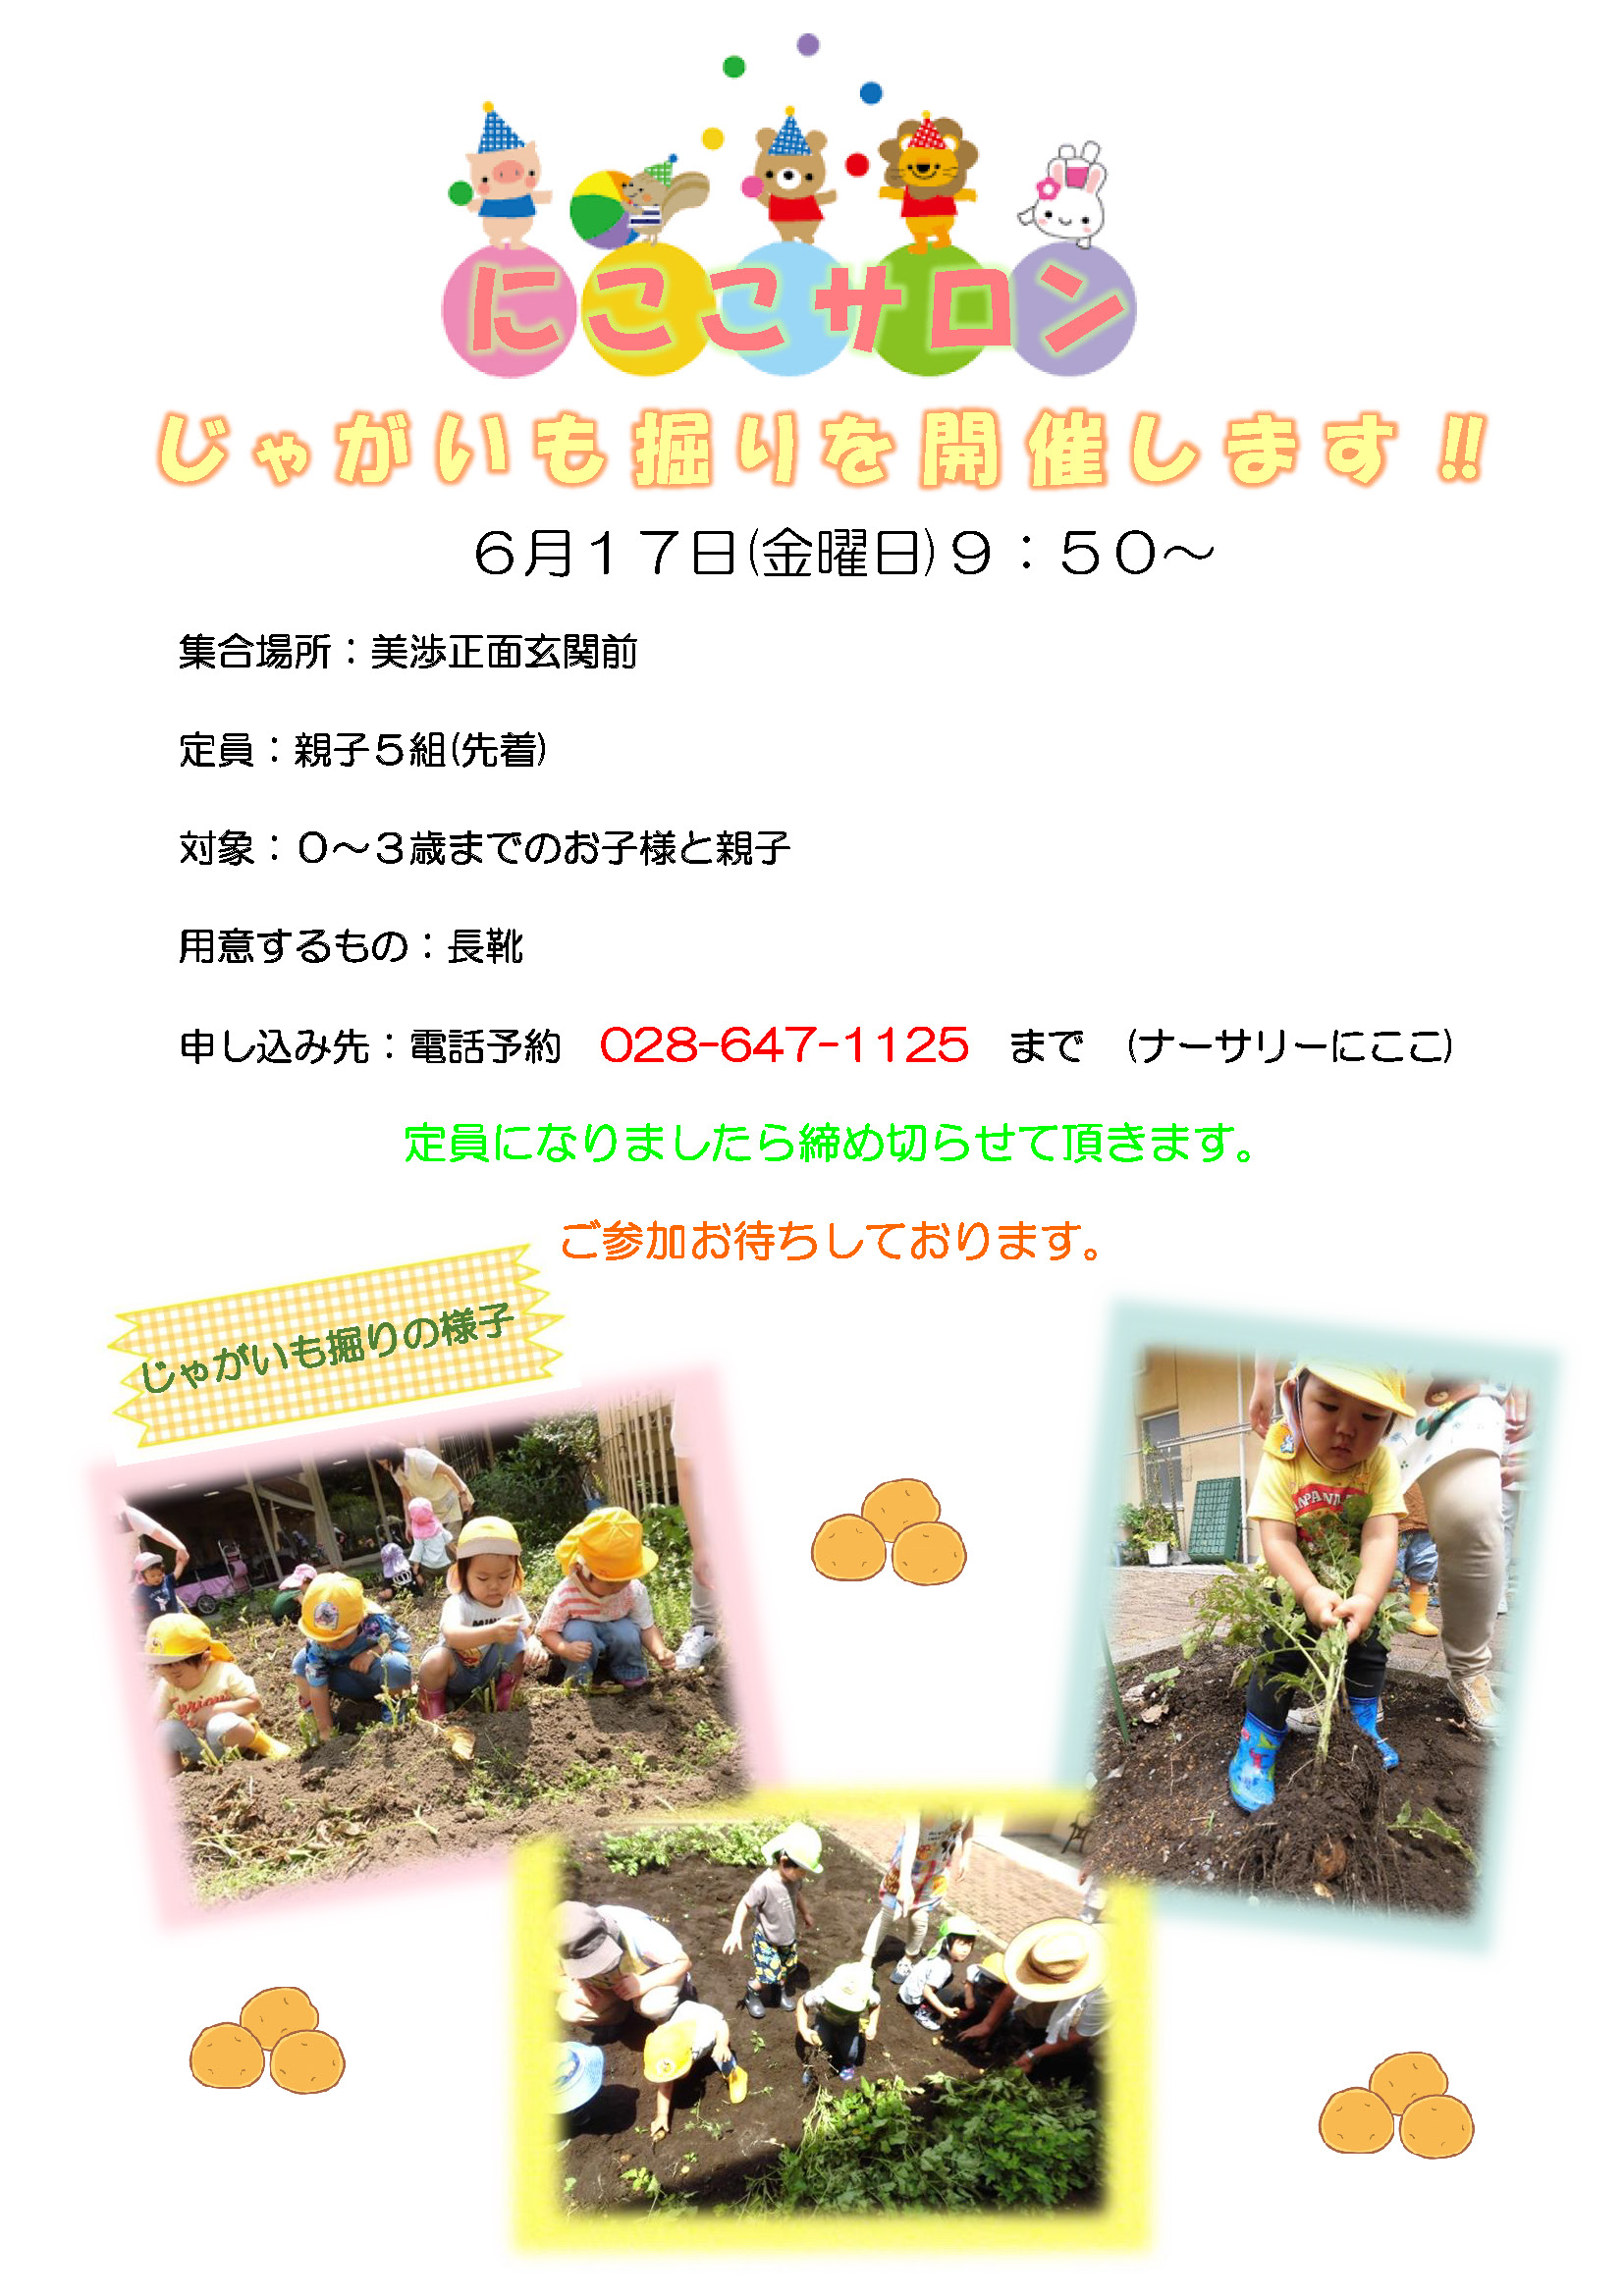 栃木県宇都宮市小規模保育園_にここサロンじゃがいも掘りを開催します